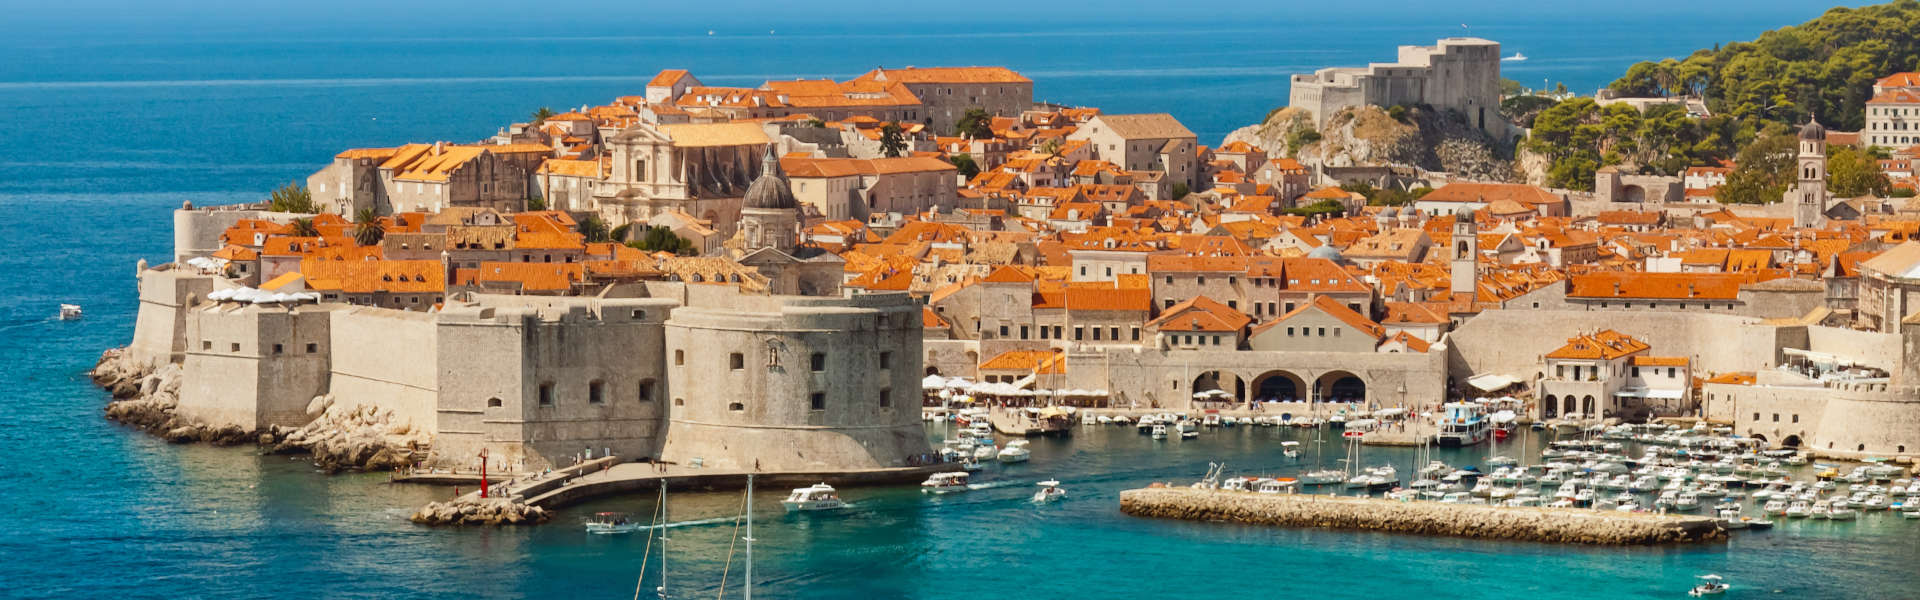 Två veckor - Dubrovnik och tillbaka